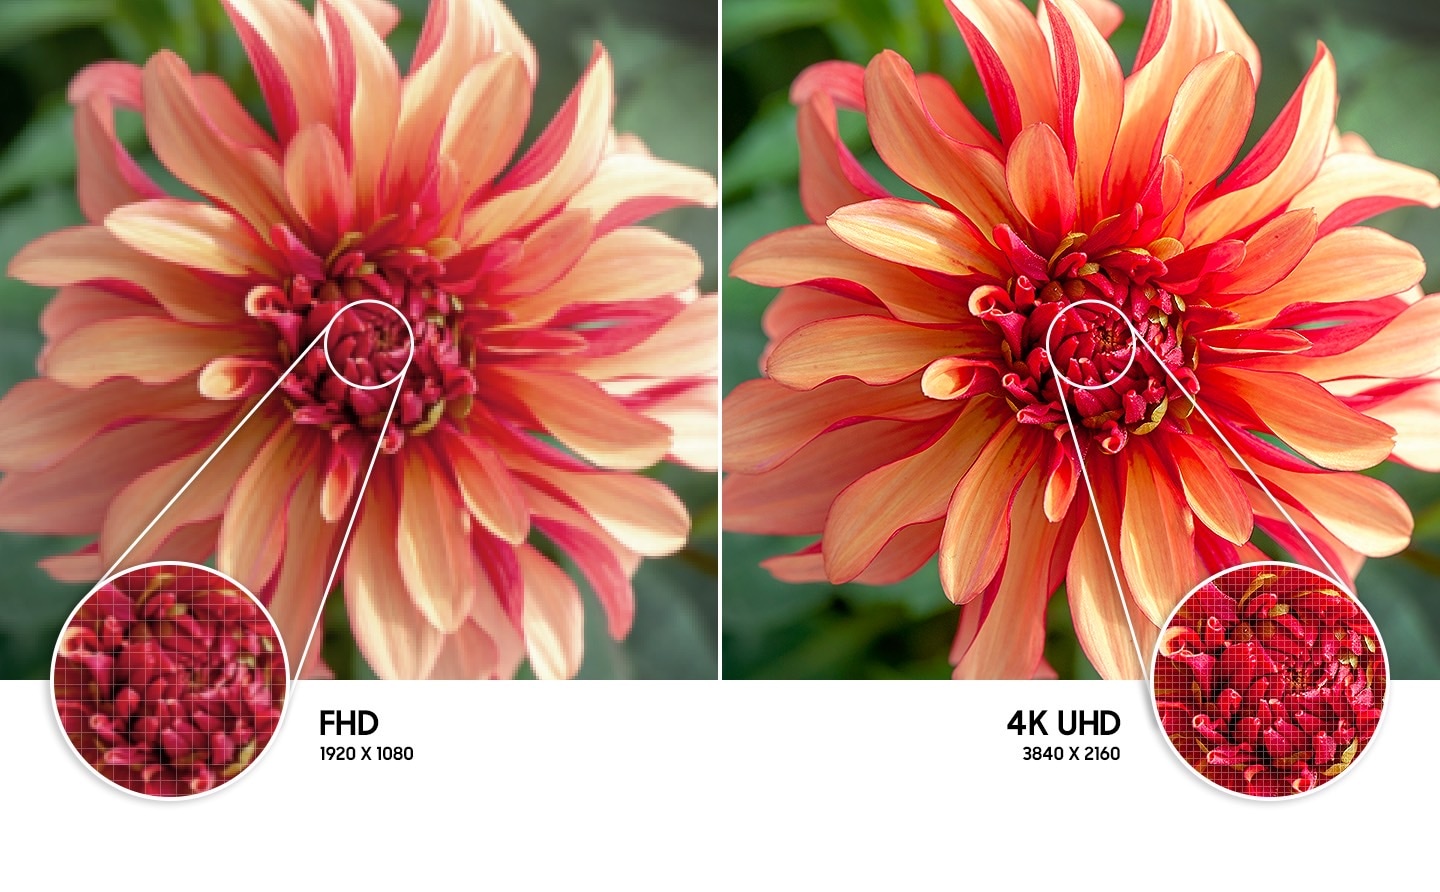 L'image de la fleur à droite par rapport à celle de gauche montre une résolution d'image de meilleure qualité créée par la technologie 4K UHD.